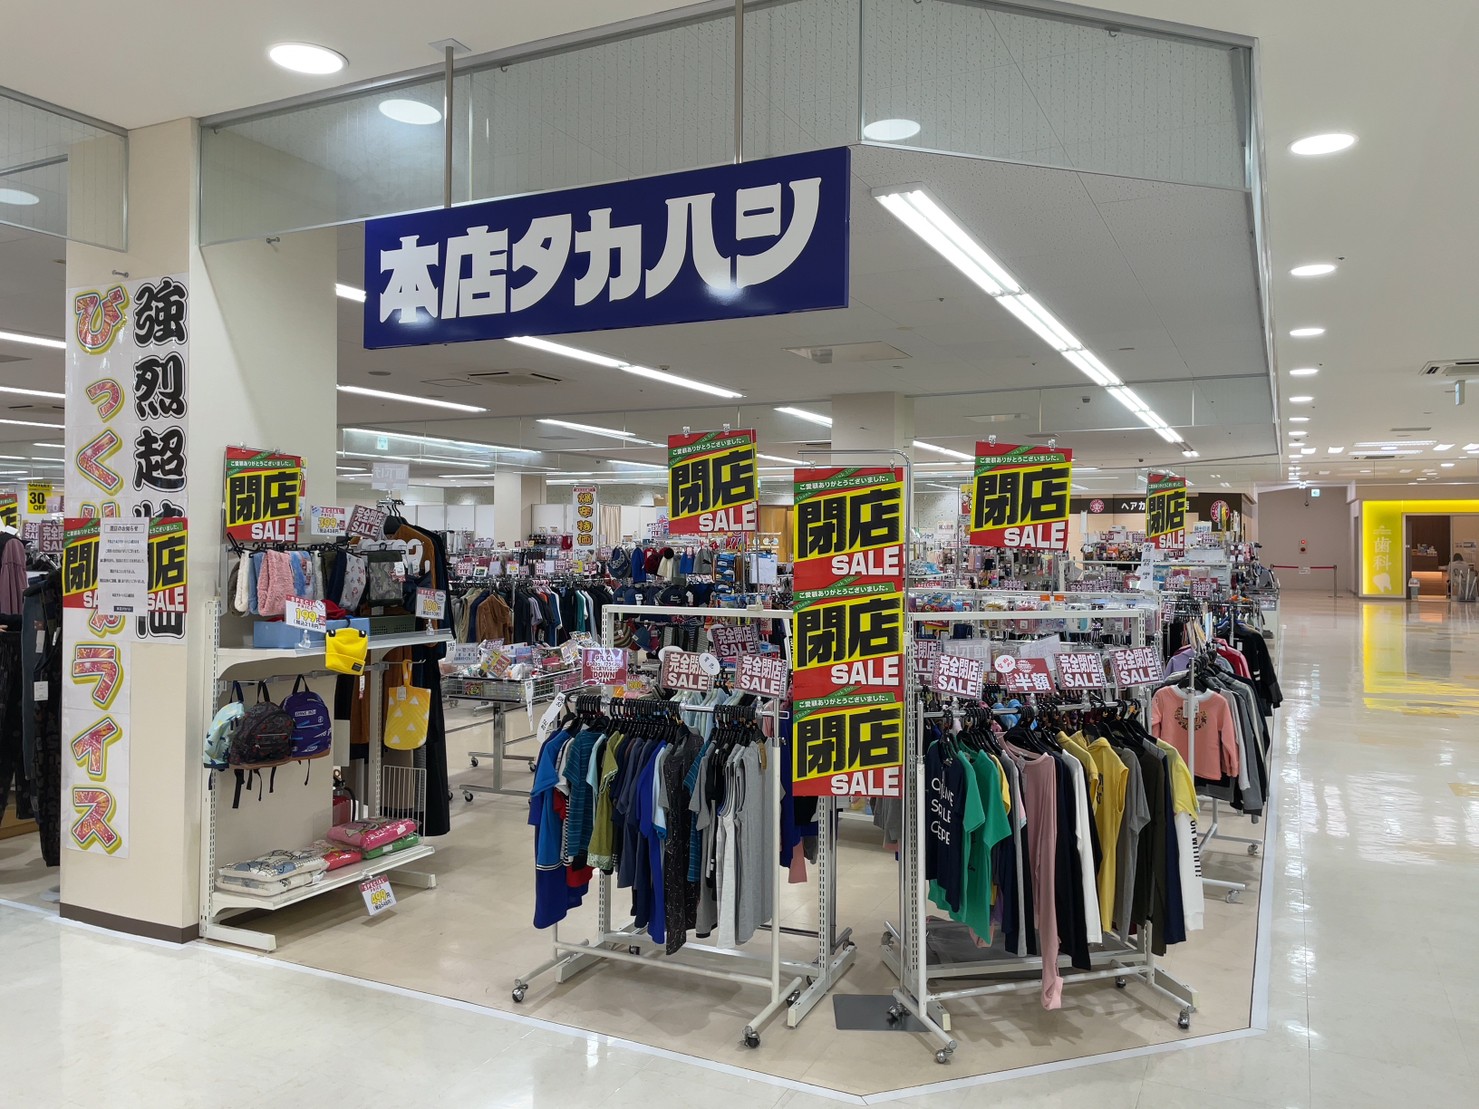 2023年3月31日(金)に本店タカハシALCo越谷ショッピングスクエア店が閉店したそうです【がやてっく閉店】